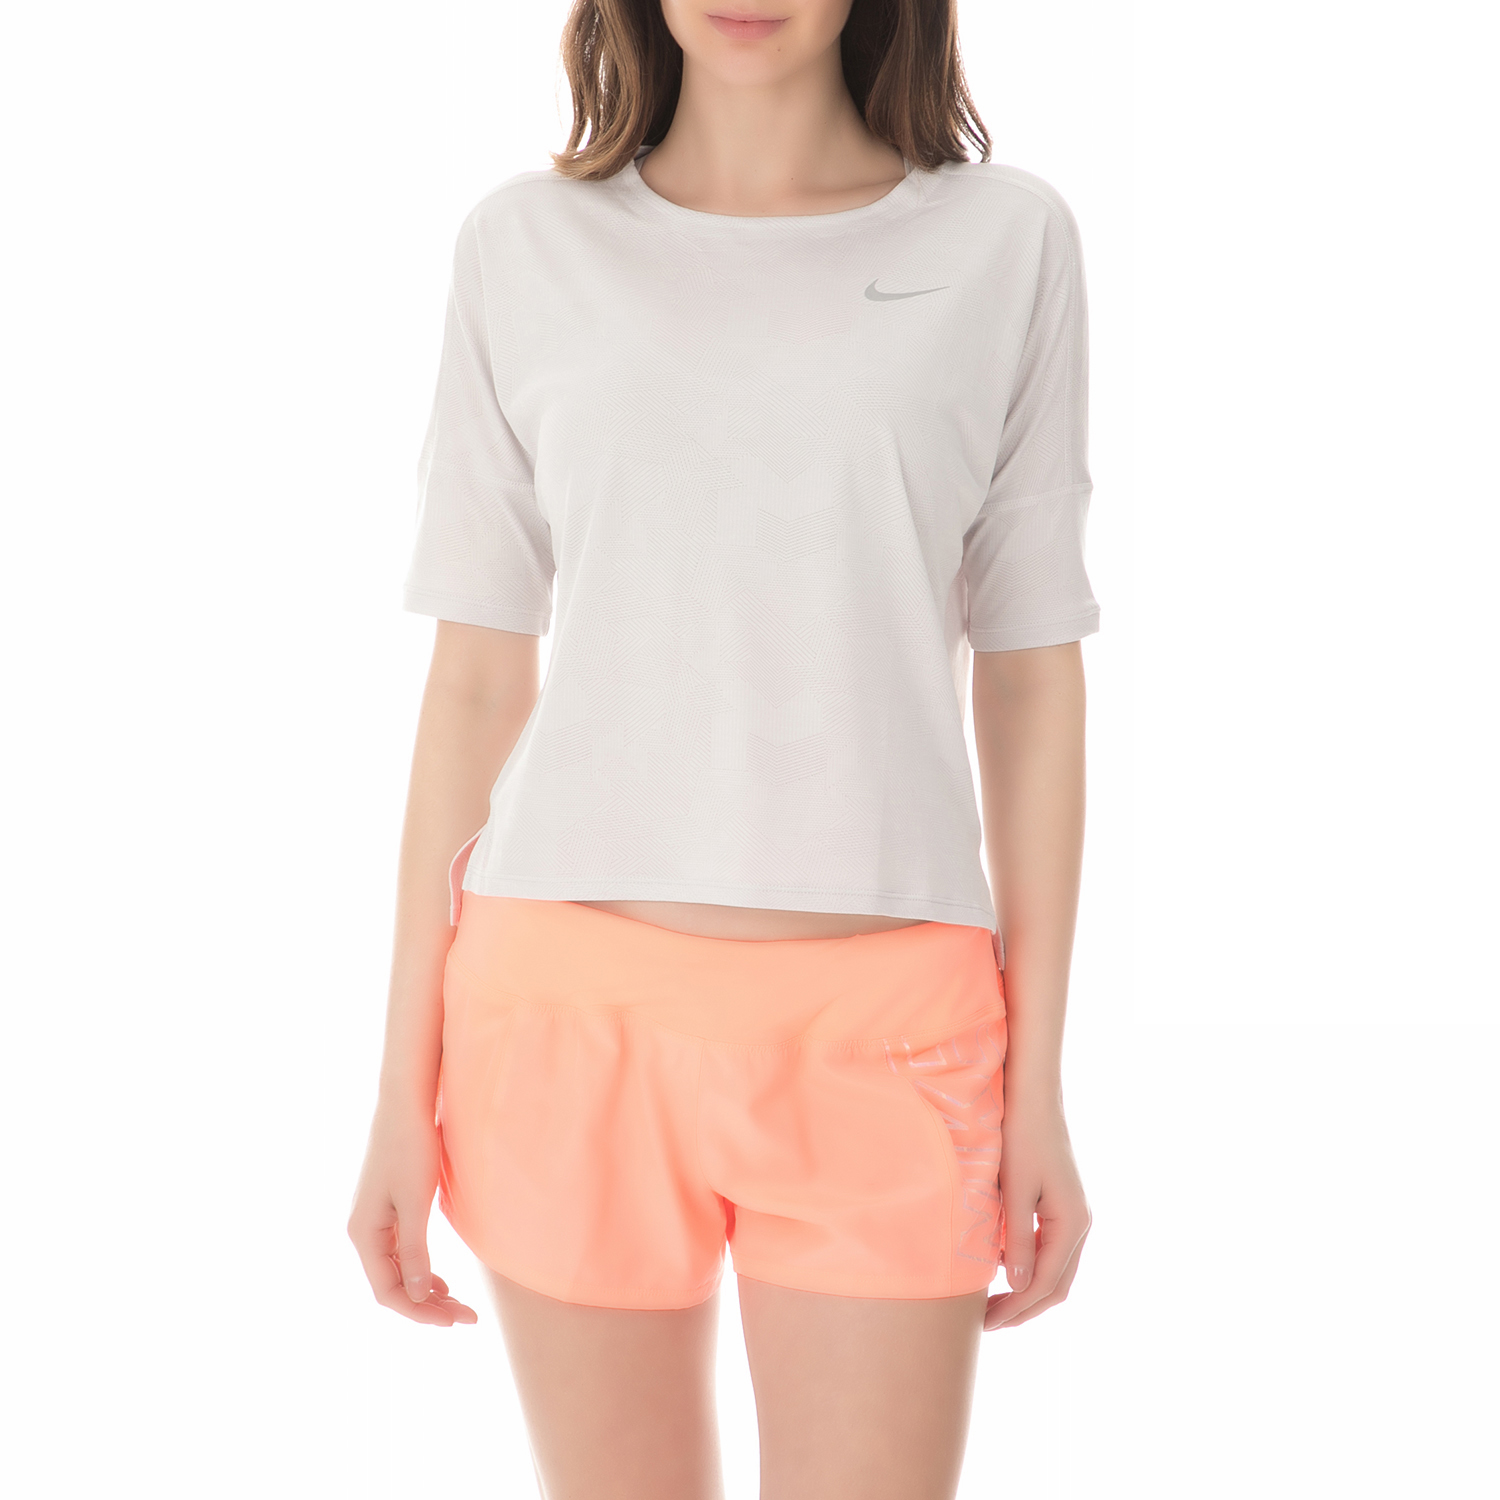 Γυναικεία/Ρούχα/Αθλητικά/T-shirt-Τοπ NIKE - Γυναικεία μπλούζα running Nike DRY MEDALIST λευκή